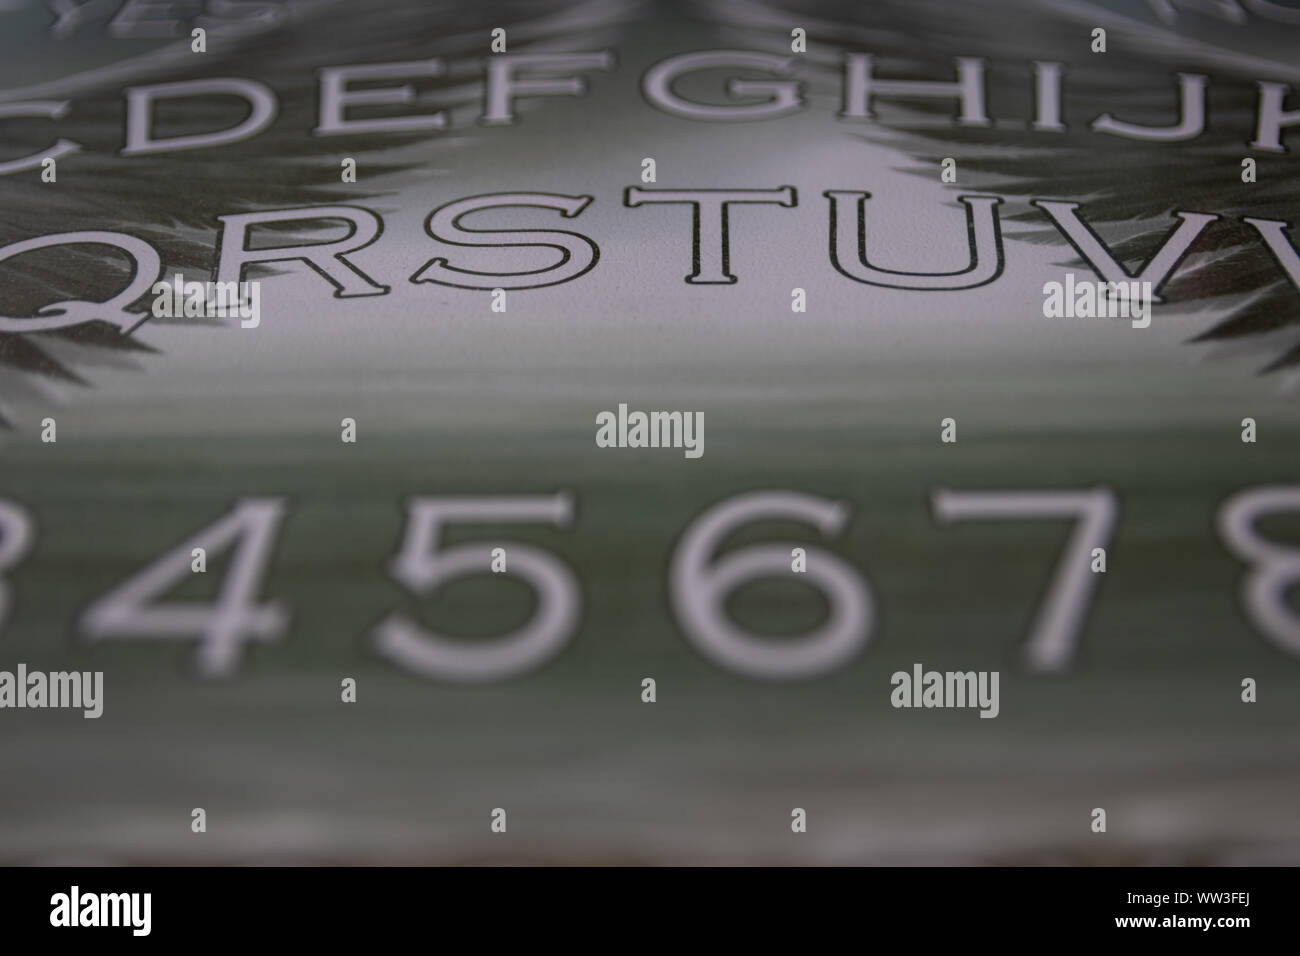 Un gros plan des chiffres et lettres d'un ange a utilisé pour évoquer des esprits ou anges ressemble beaucoup à un Ouija board Banque D'Images